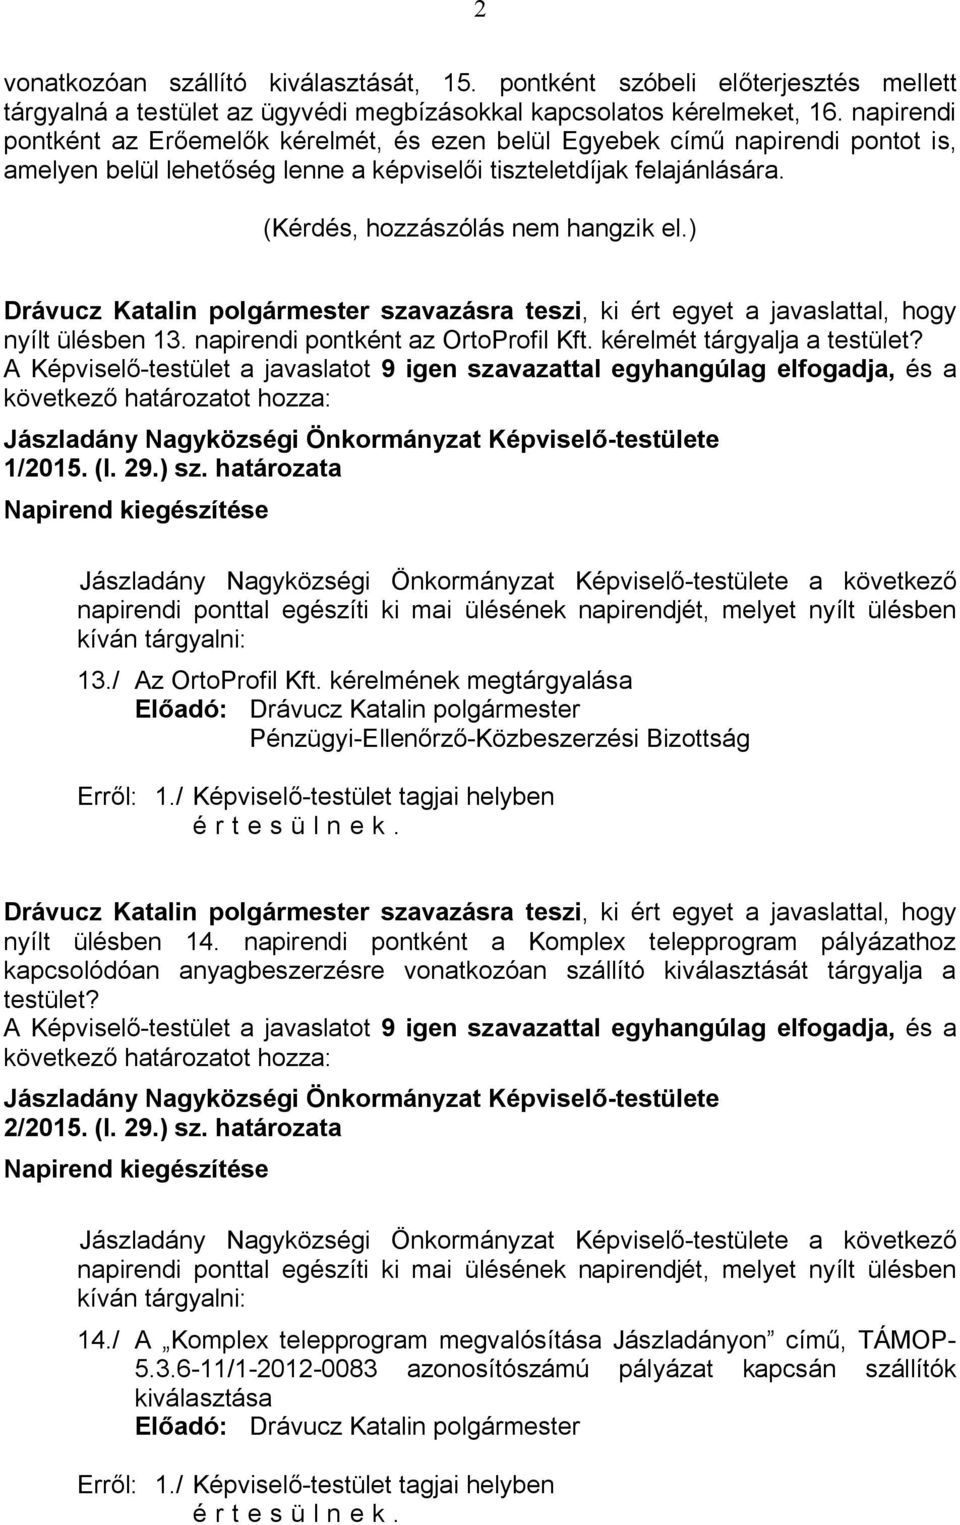 ) Drávucz Katalin polgármester szavazásra teszi, ki ért egyet a javaslattal, hogy nyílt ülésben 13. napirendi pontként az OrtoProfil Kft. kérelmét tárgyalja a testület? 1/2015. (I. 29.) sz.